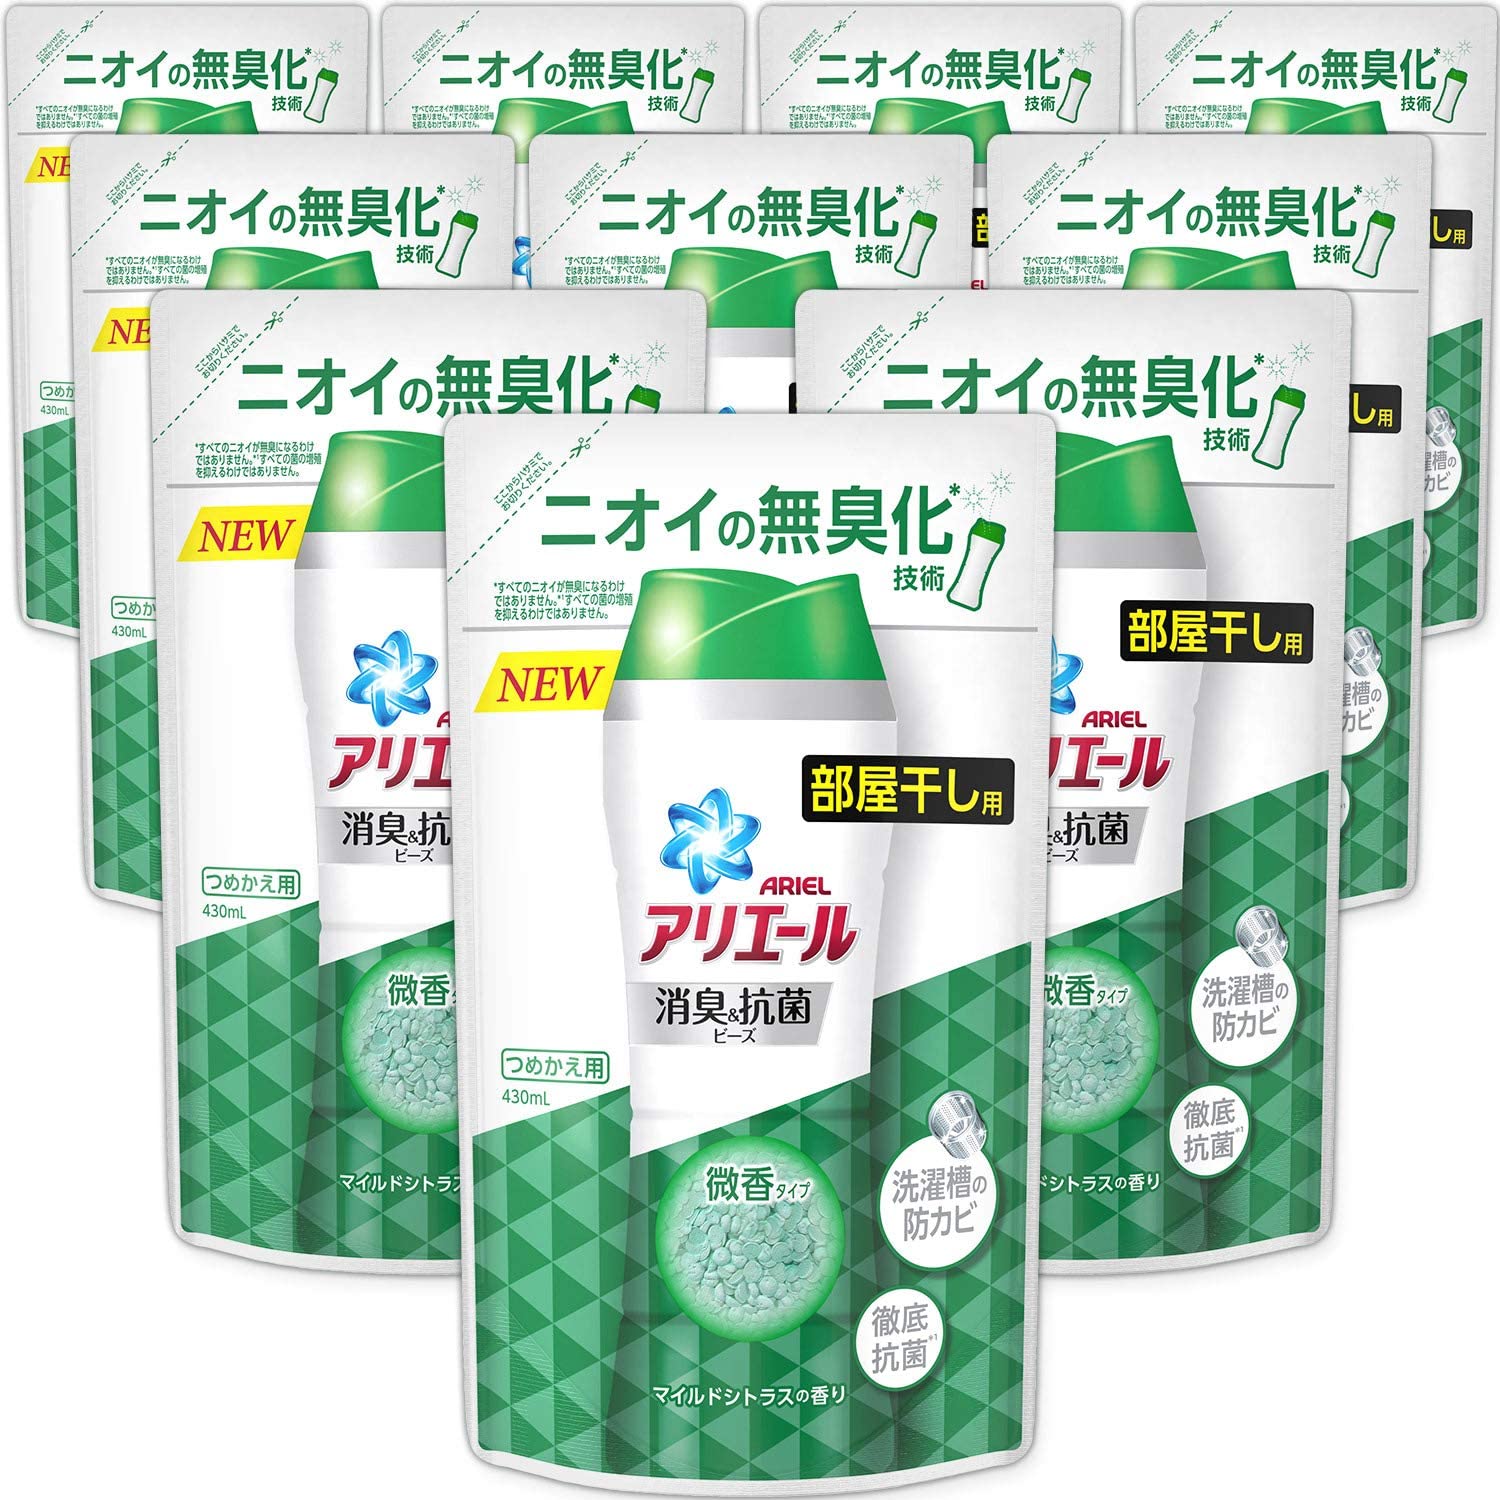 【楽天市場】P&G アリエール 消臭&抗菌ビーズ 詰め替え ４箱 